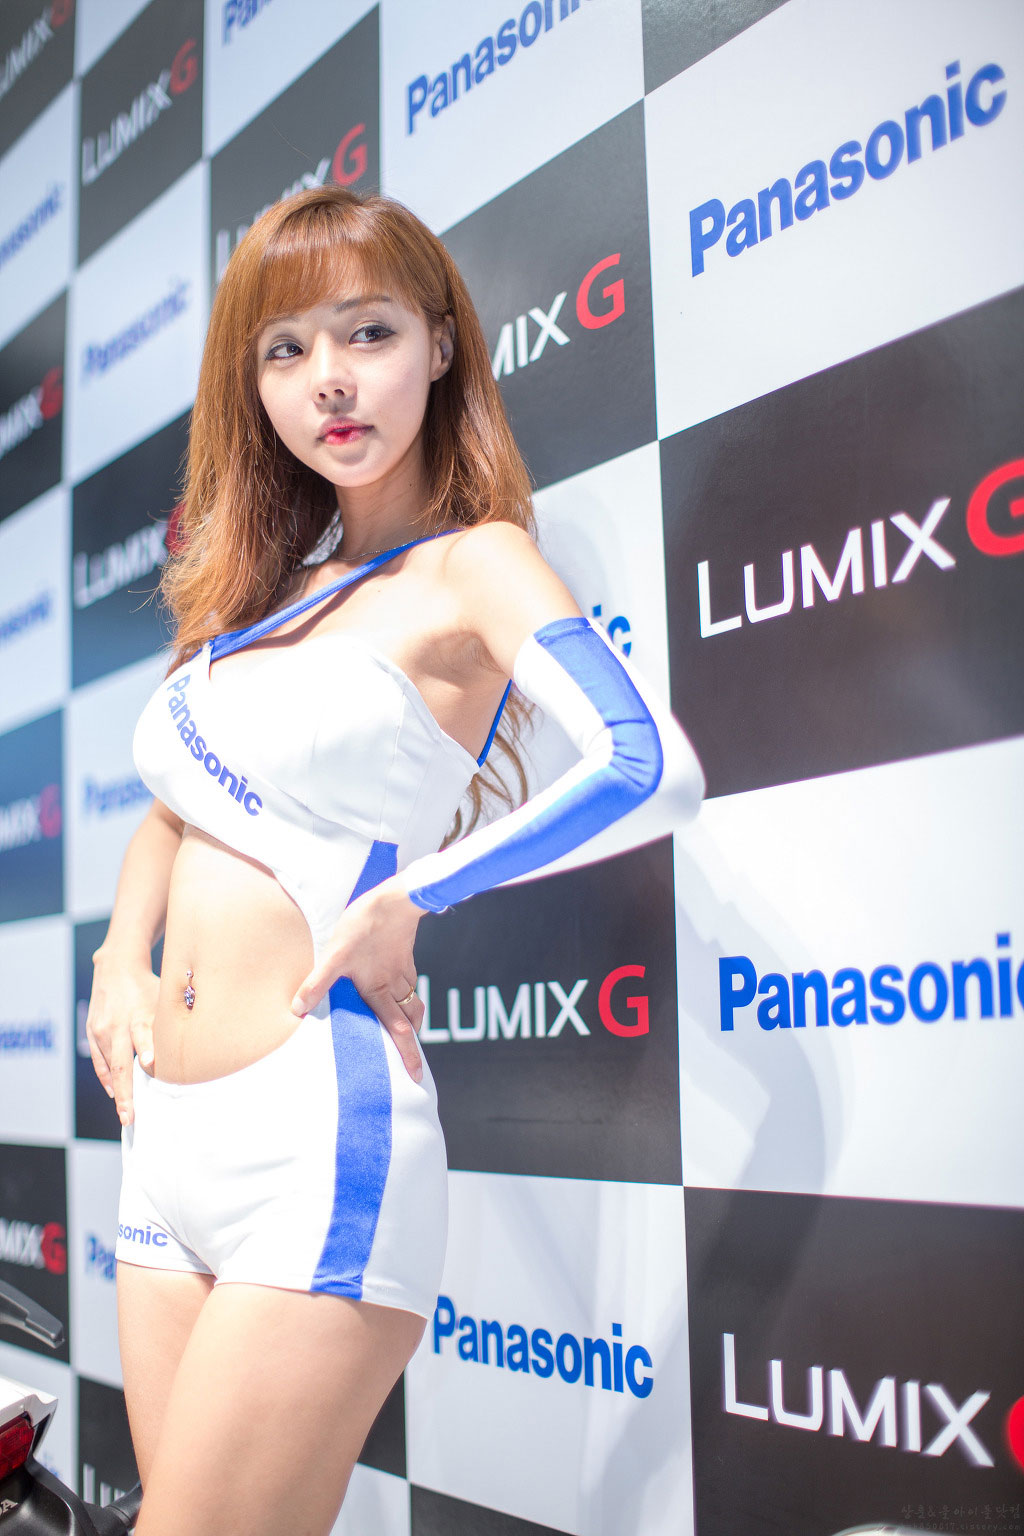 Seo Jin Ah Korea Electronics Show 2013 Panasonic Lumix